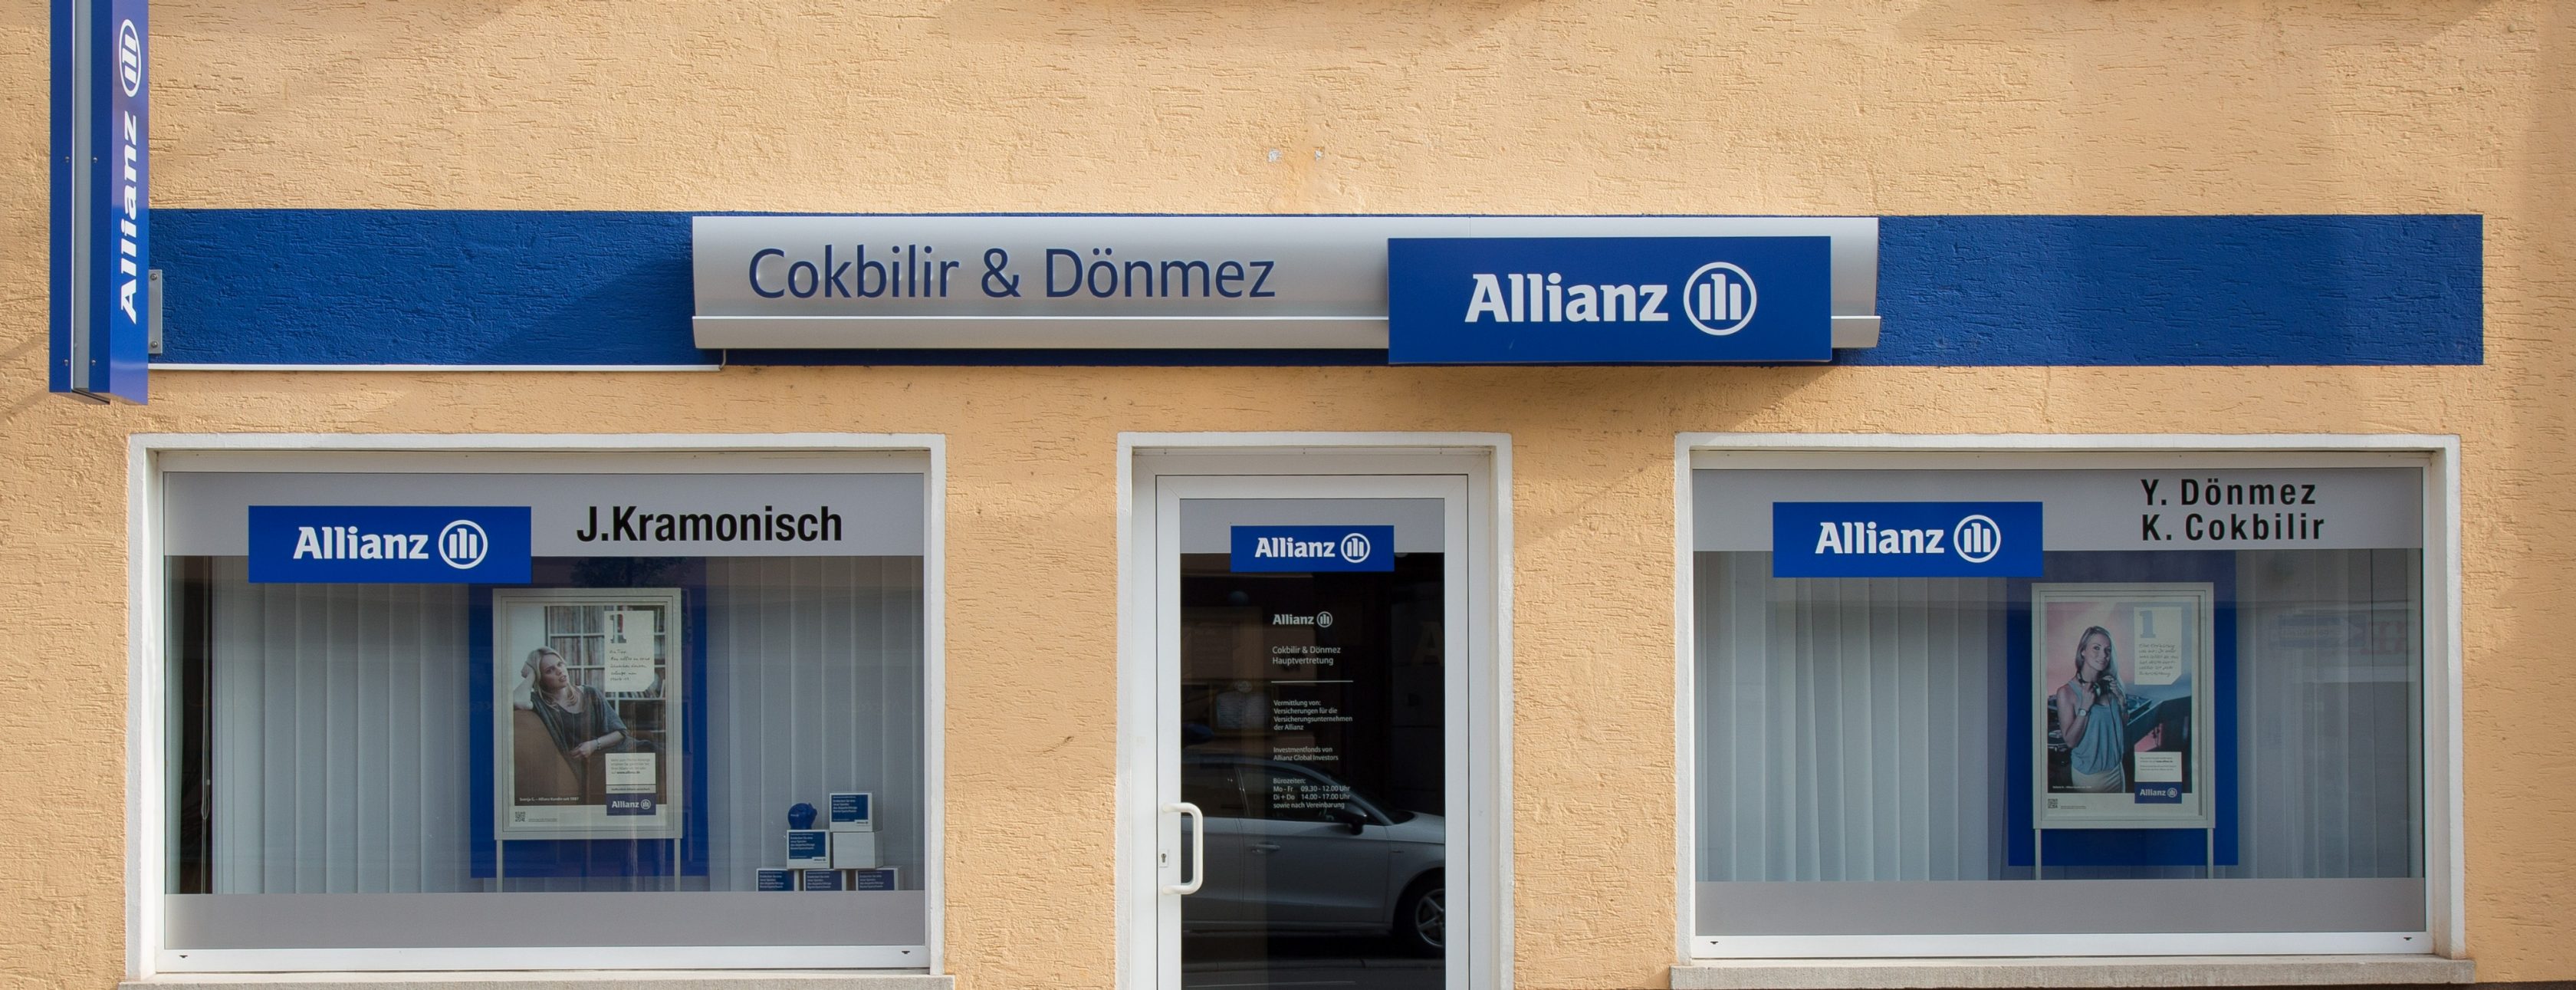 Allianz Versicherung Kemal Cokbilir und Yener Dönmez GbR Worms - Allianz Friedrichstrasse Worms Agentur Türk